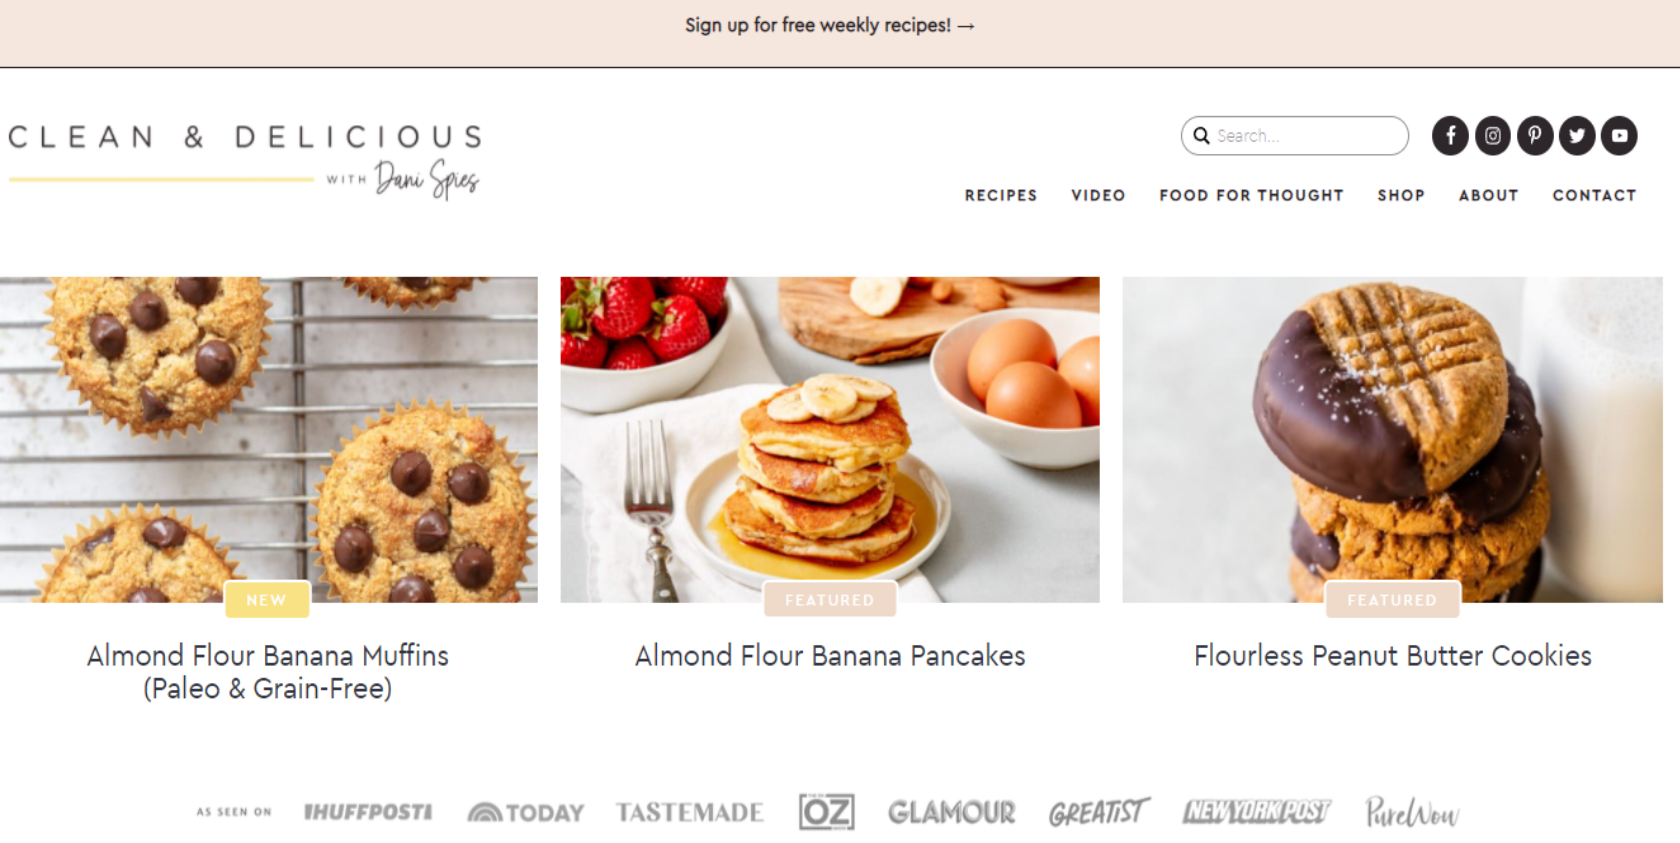 Clean & Delicious food blog website homepage